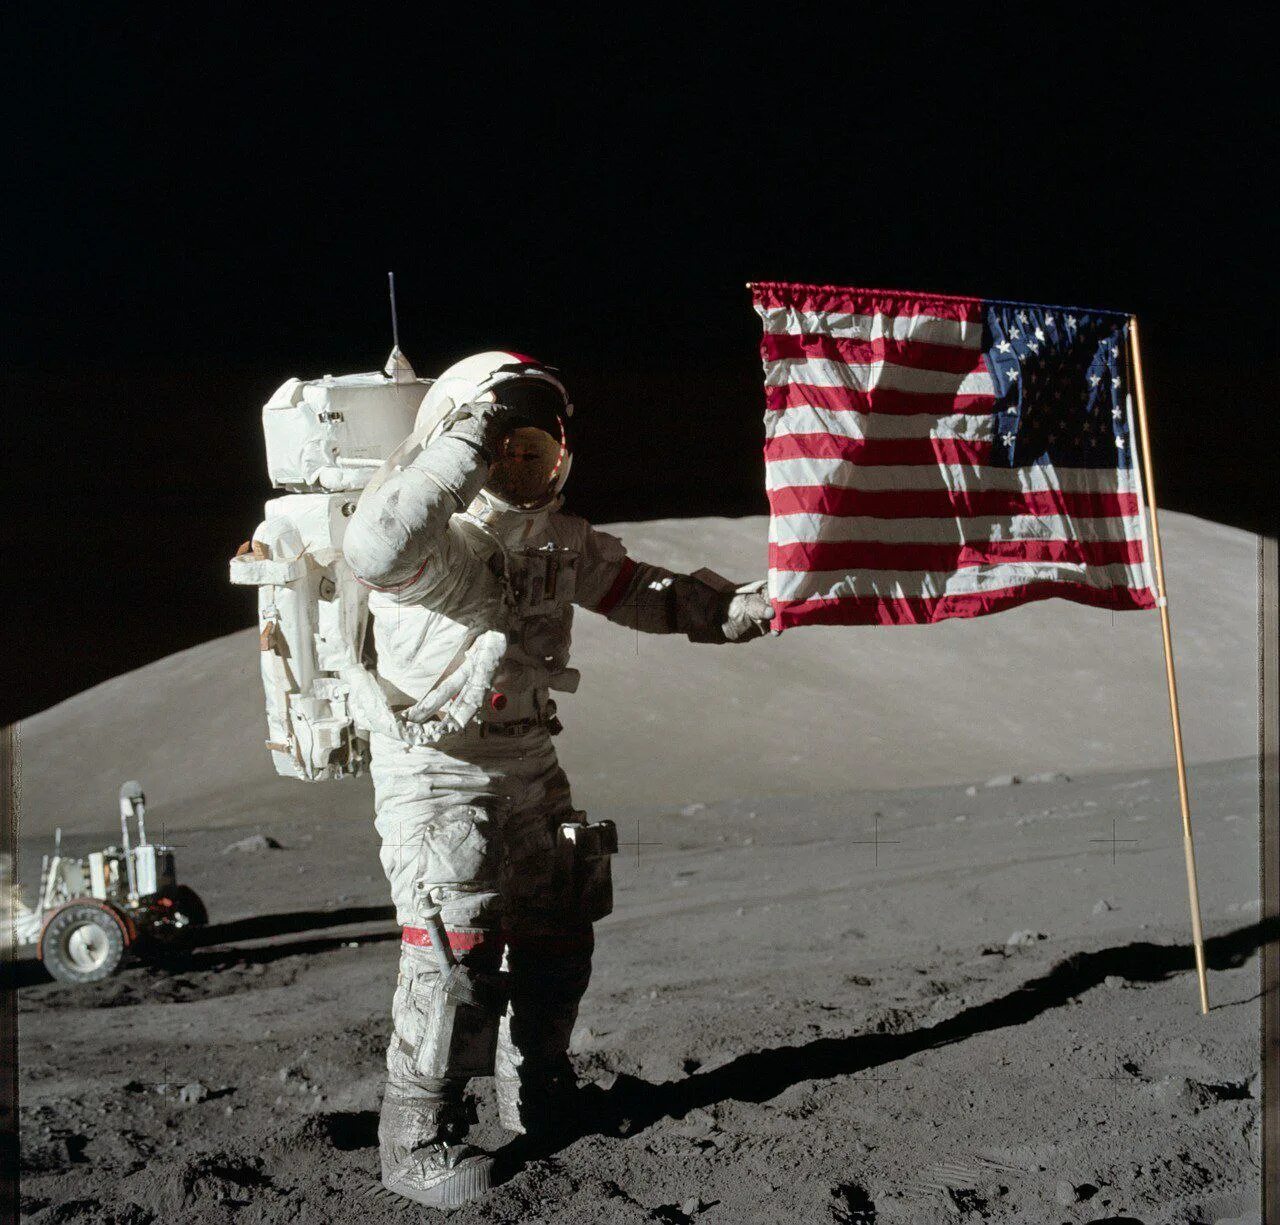 Первые американские космические полеты. Аполлон 17 Юджин Сернан. Человек на Луне Аполлон 11. Миссия Аполлон 17. Юджин Сернан на Луне.